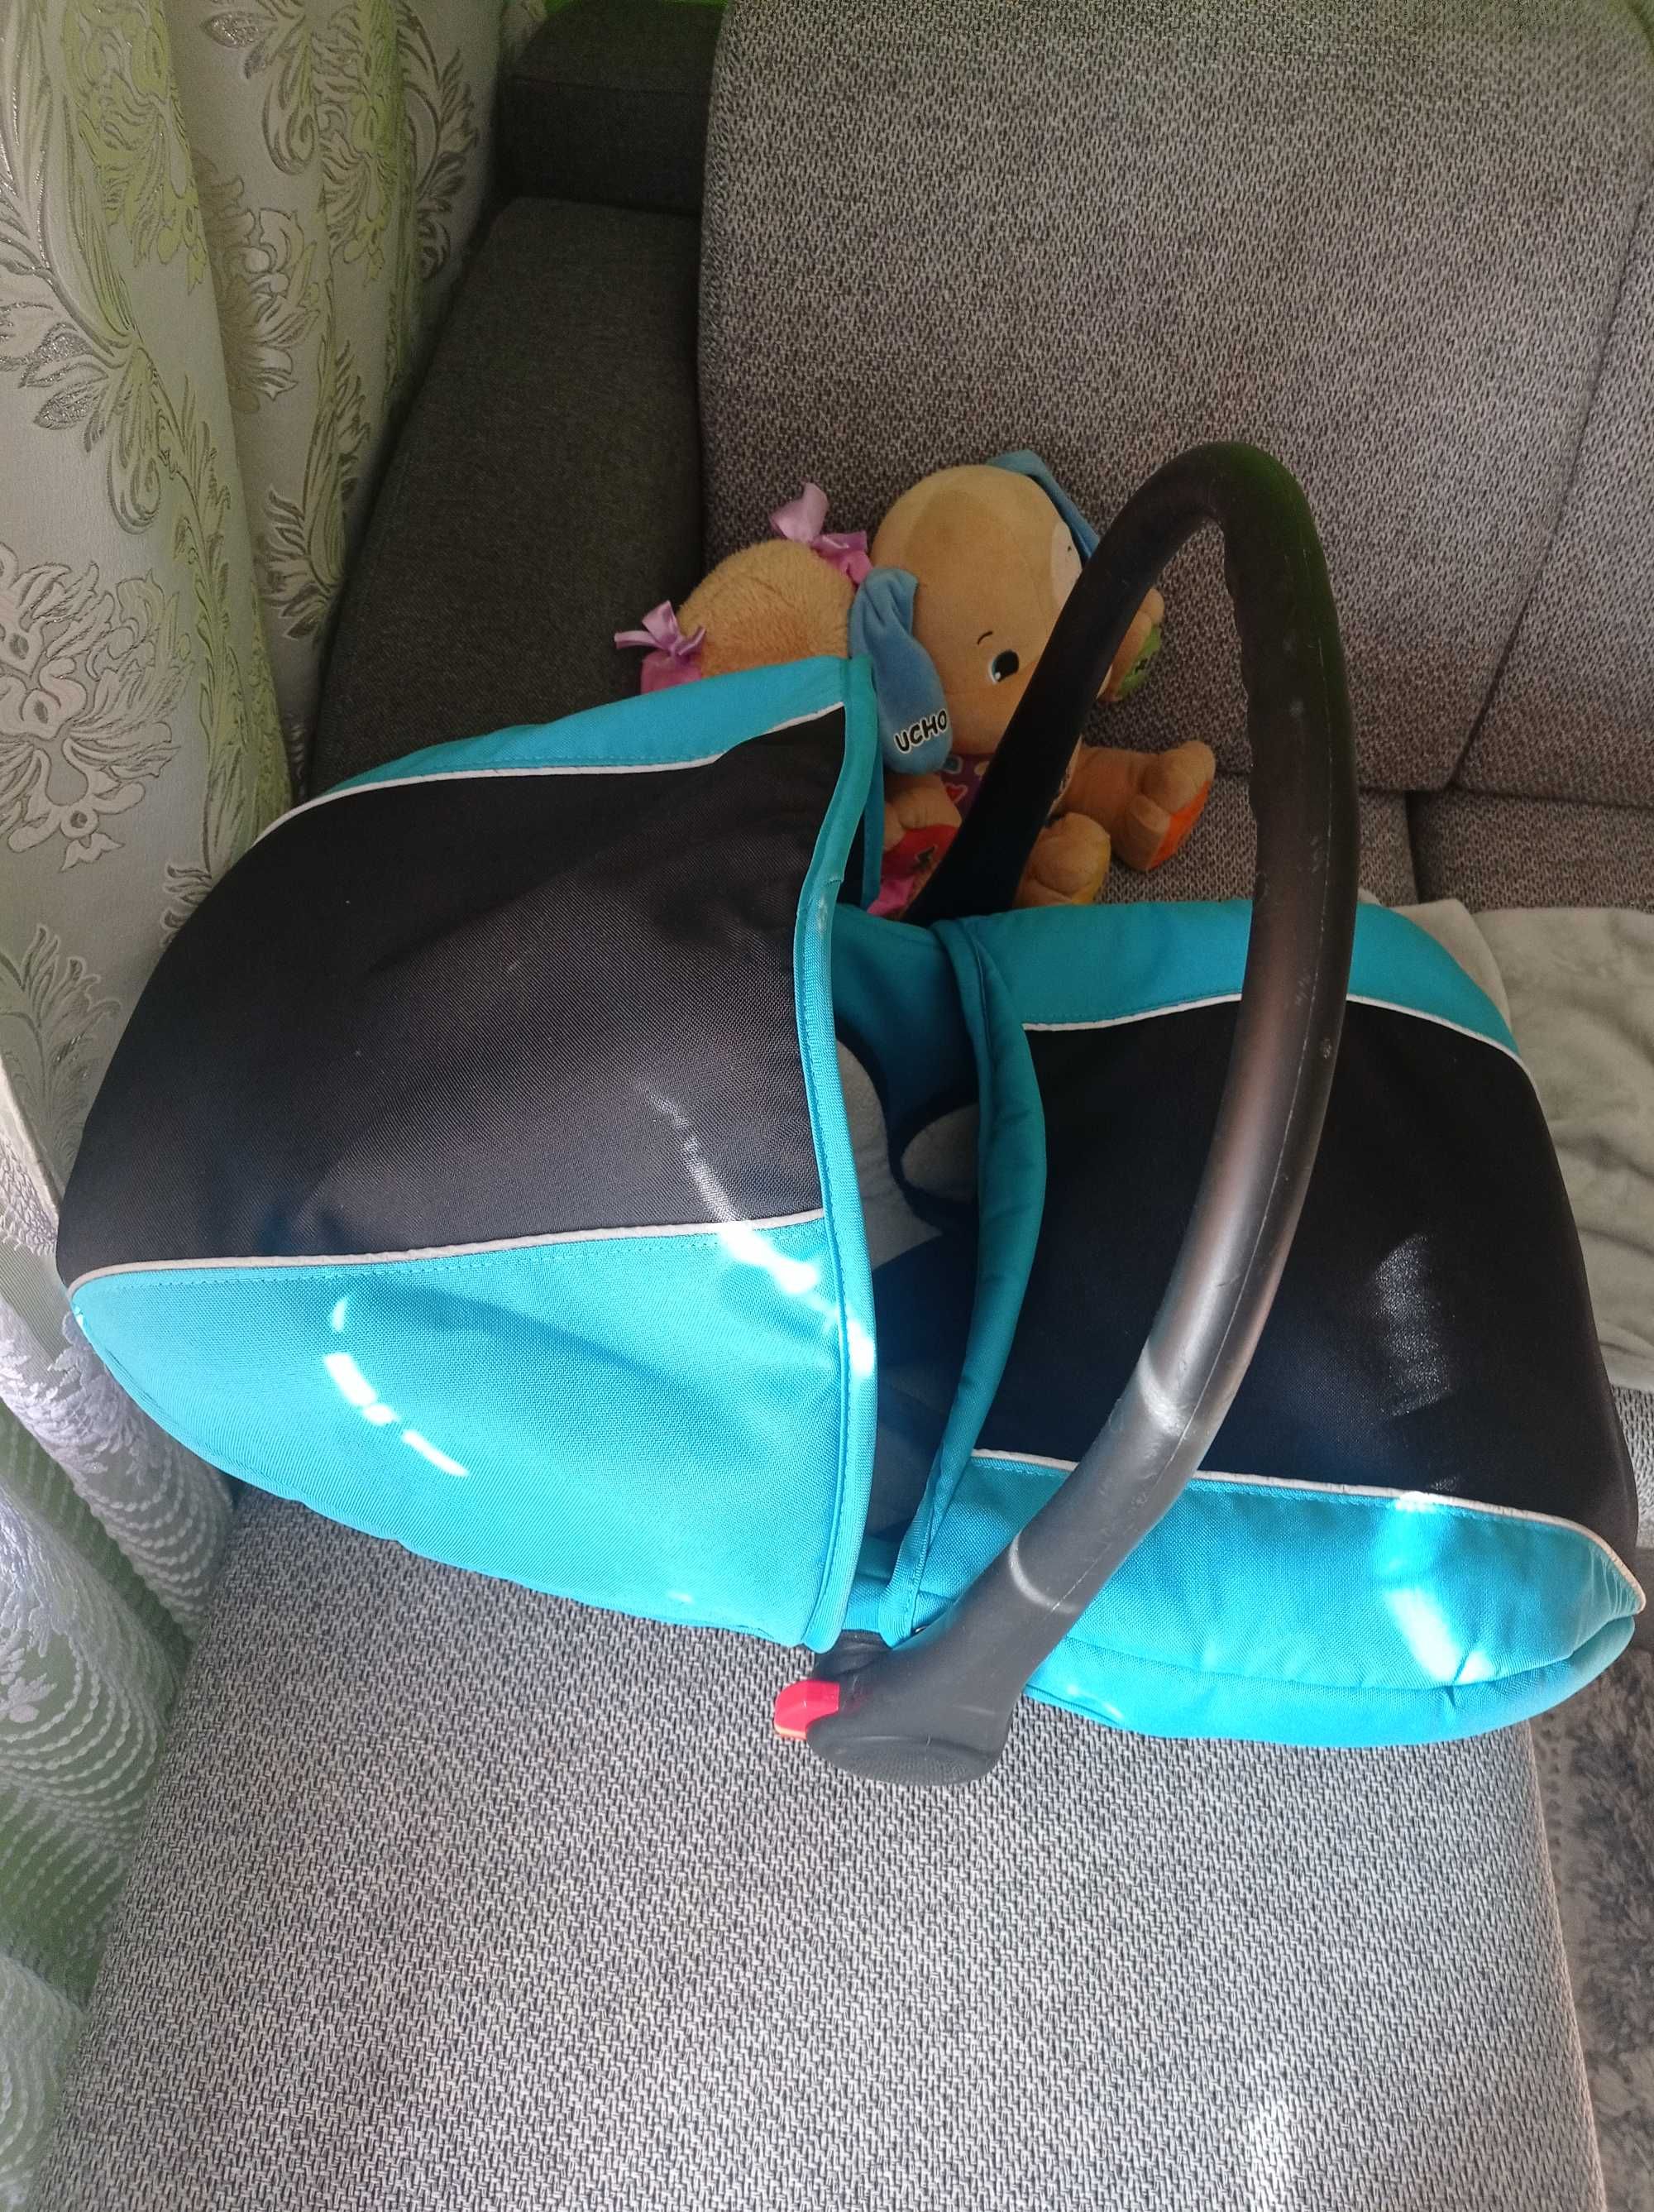 Fotelik do auta /nosidelko dla dziecka